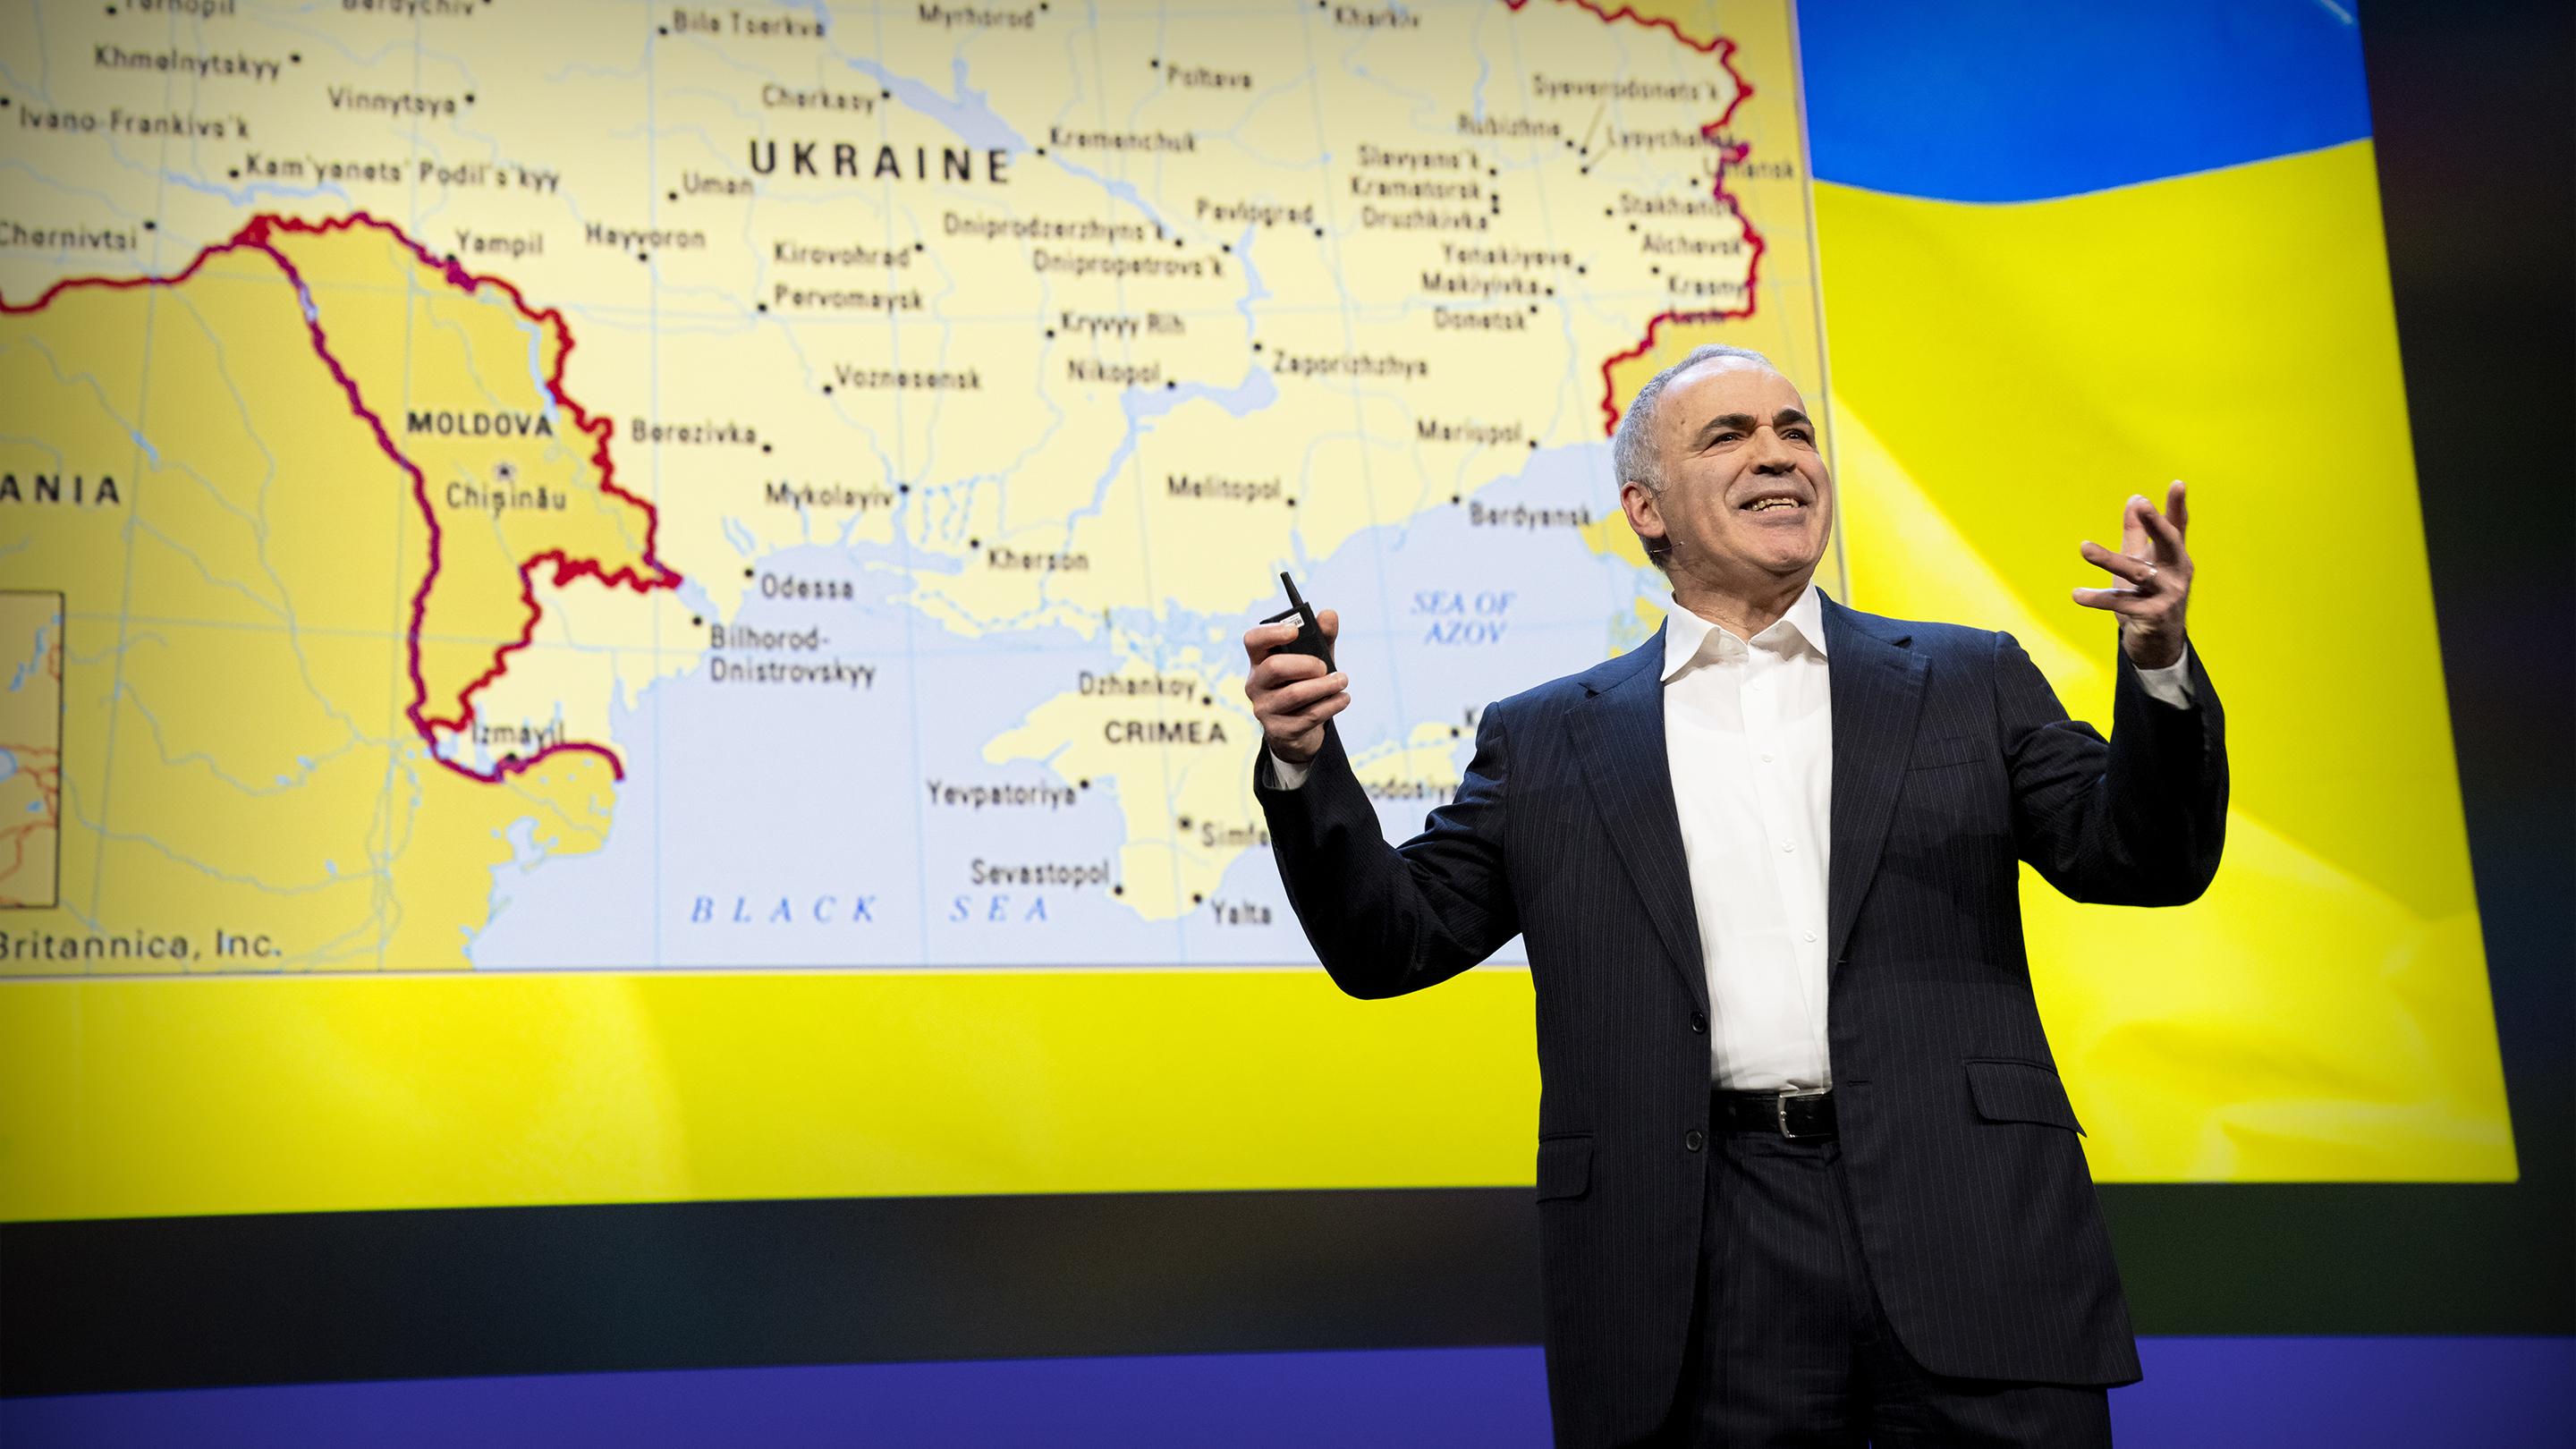 Ensemble avec l'Ukraine dans sa lutte contre le mal | Garry Kasparov